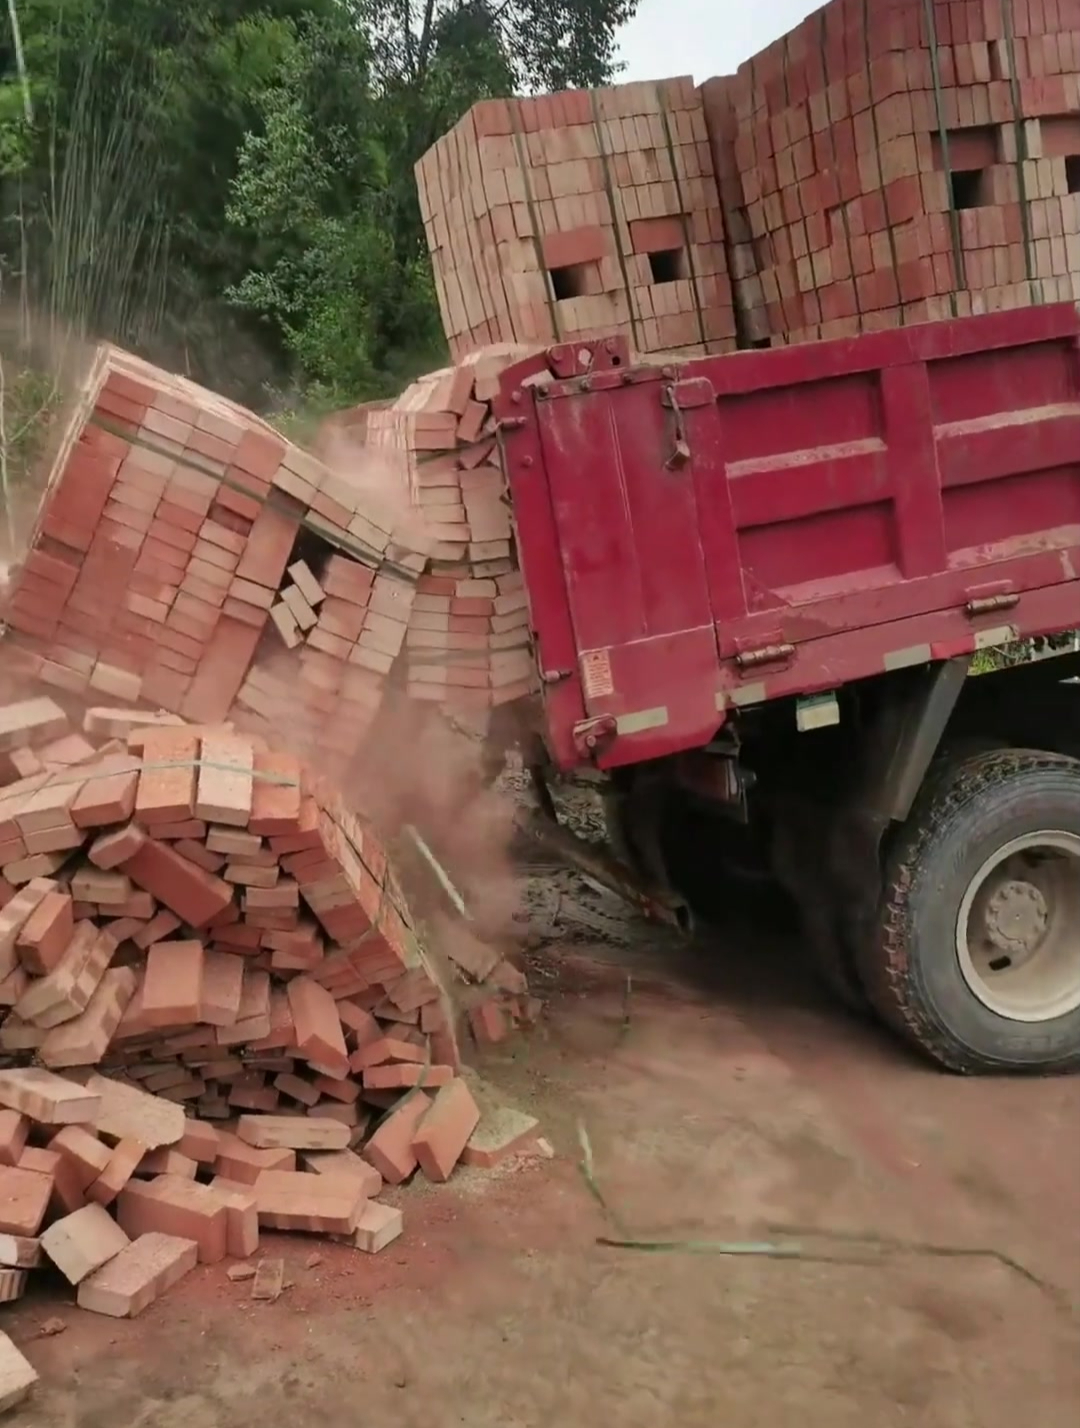 农村自建房运输红砖,这样暴力卸车,得碎掉一半